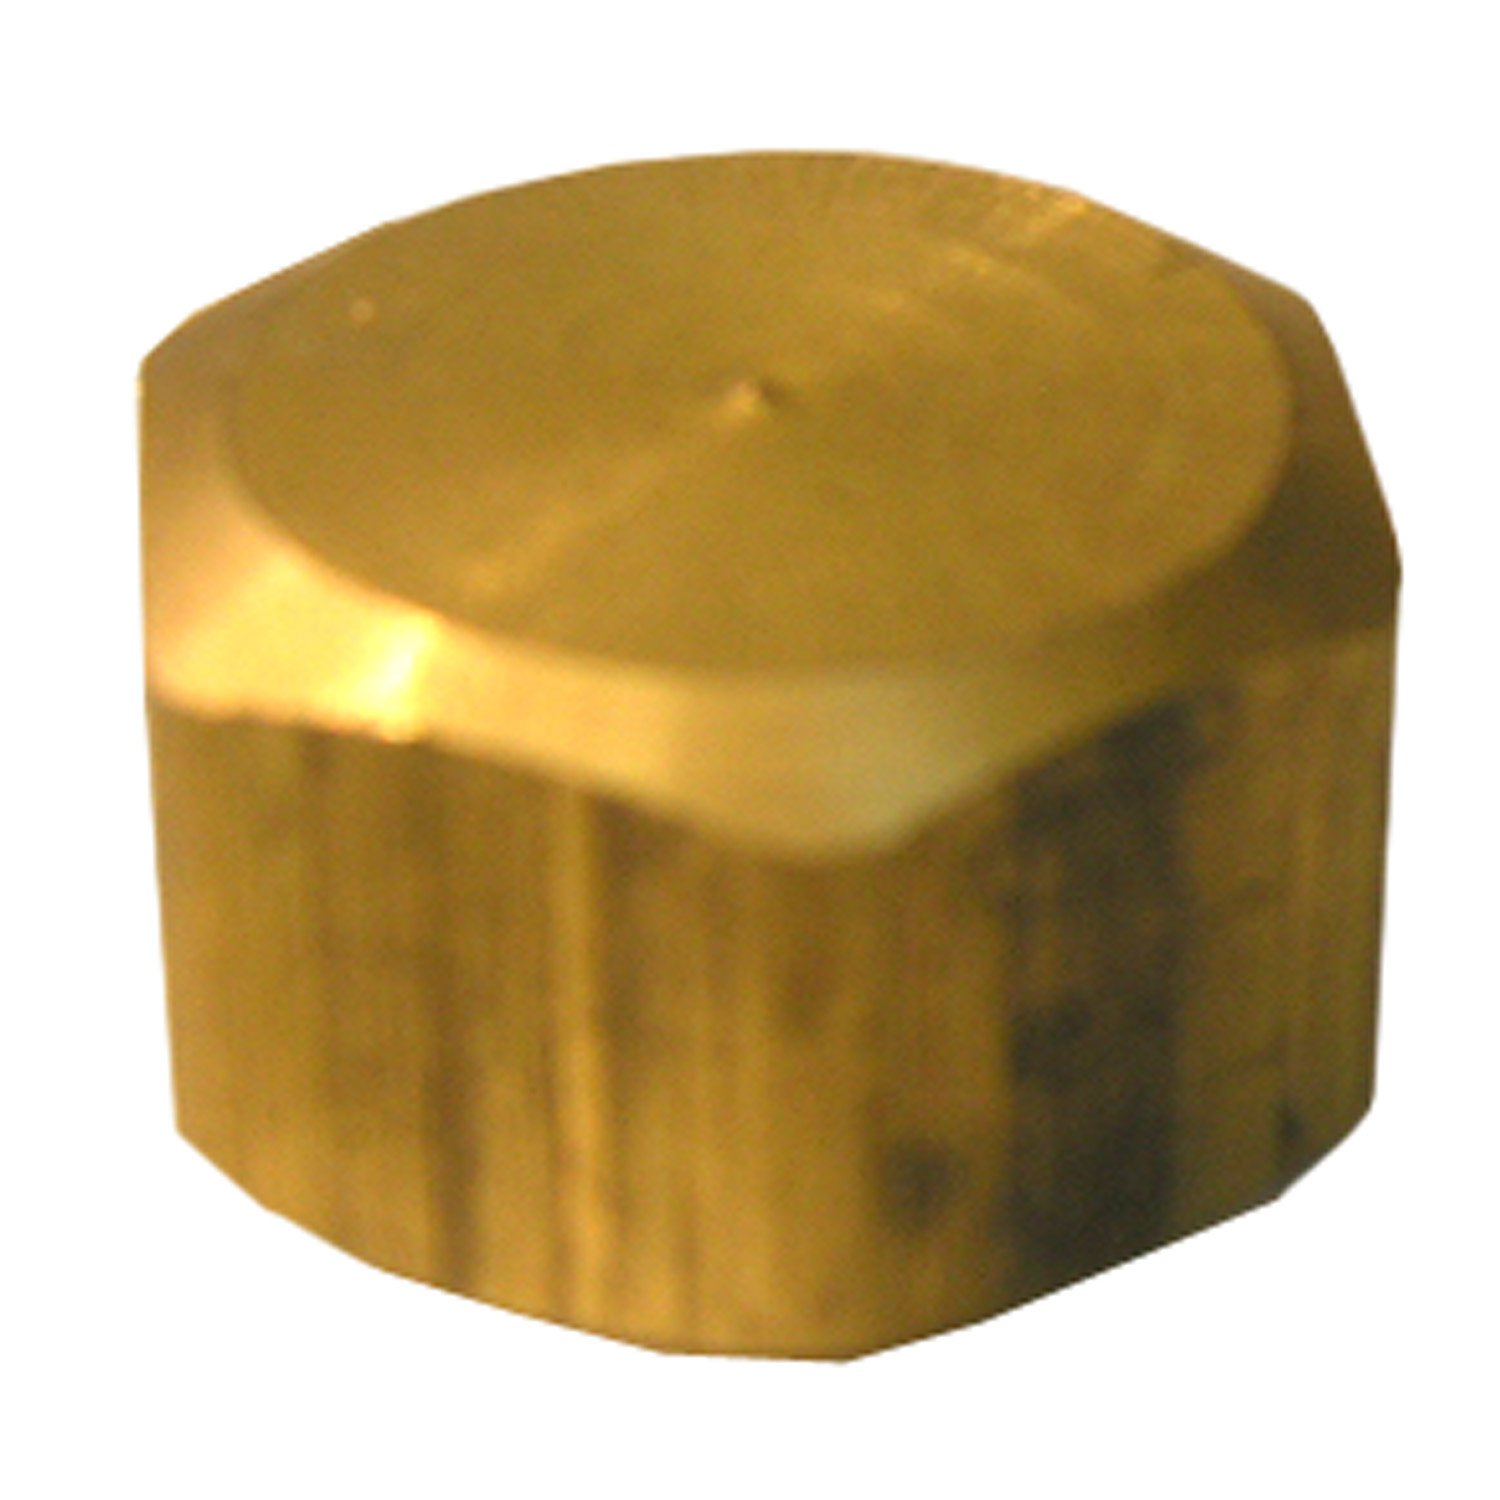 17-6189 Pipe Cap, 5/8 in, Compression, Brass, 150 psi Pressure